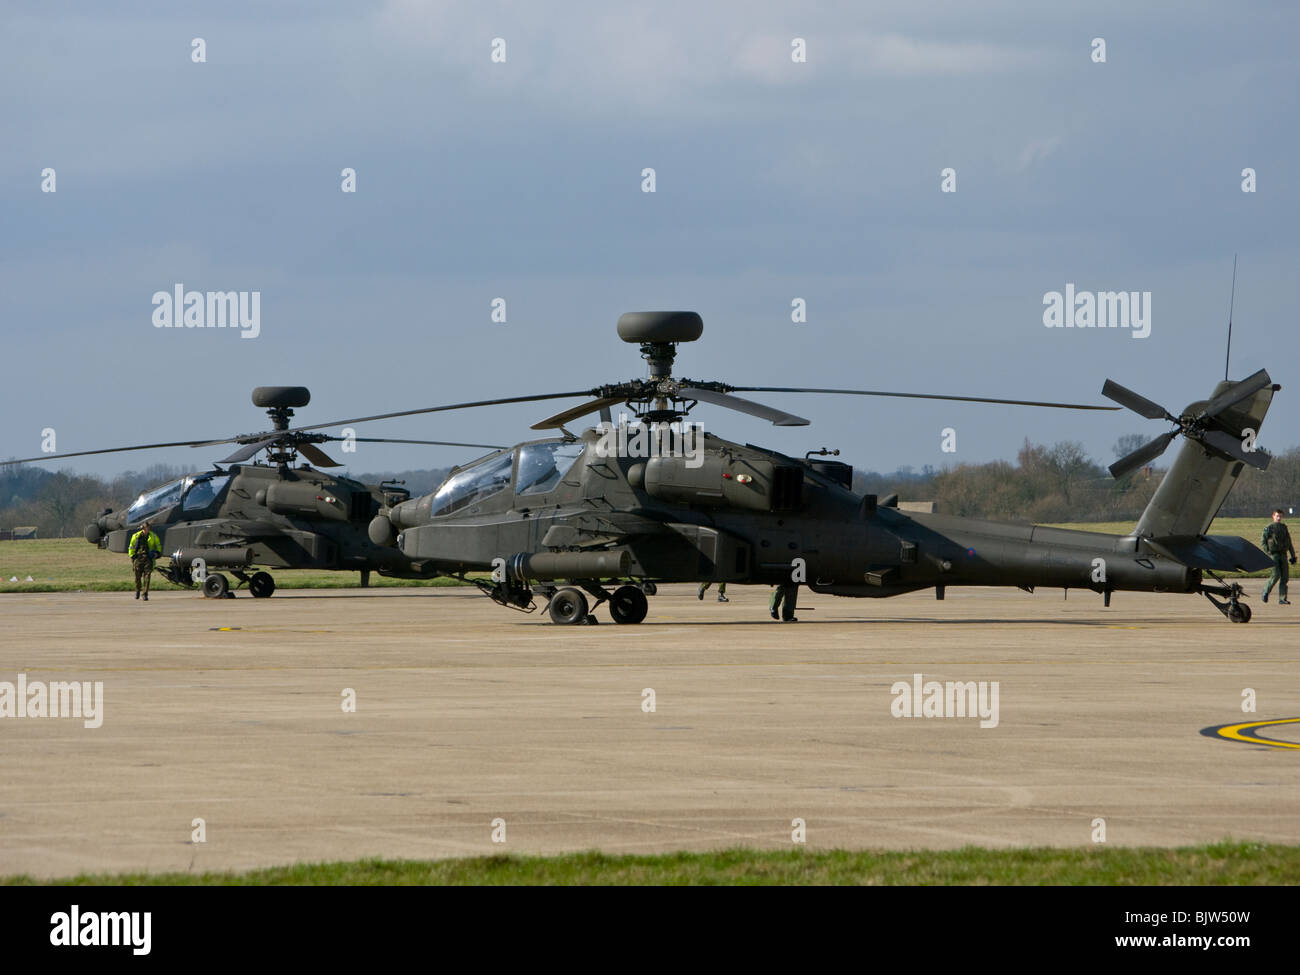 2 britische Armee Westland Angriff Hubschrauber MK1 WAH-64 Apache Longbow auf dem Rollfeld in Wattisham Airfield Suffolk Stockfoto